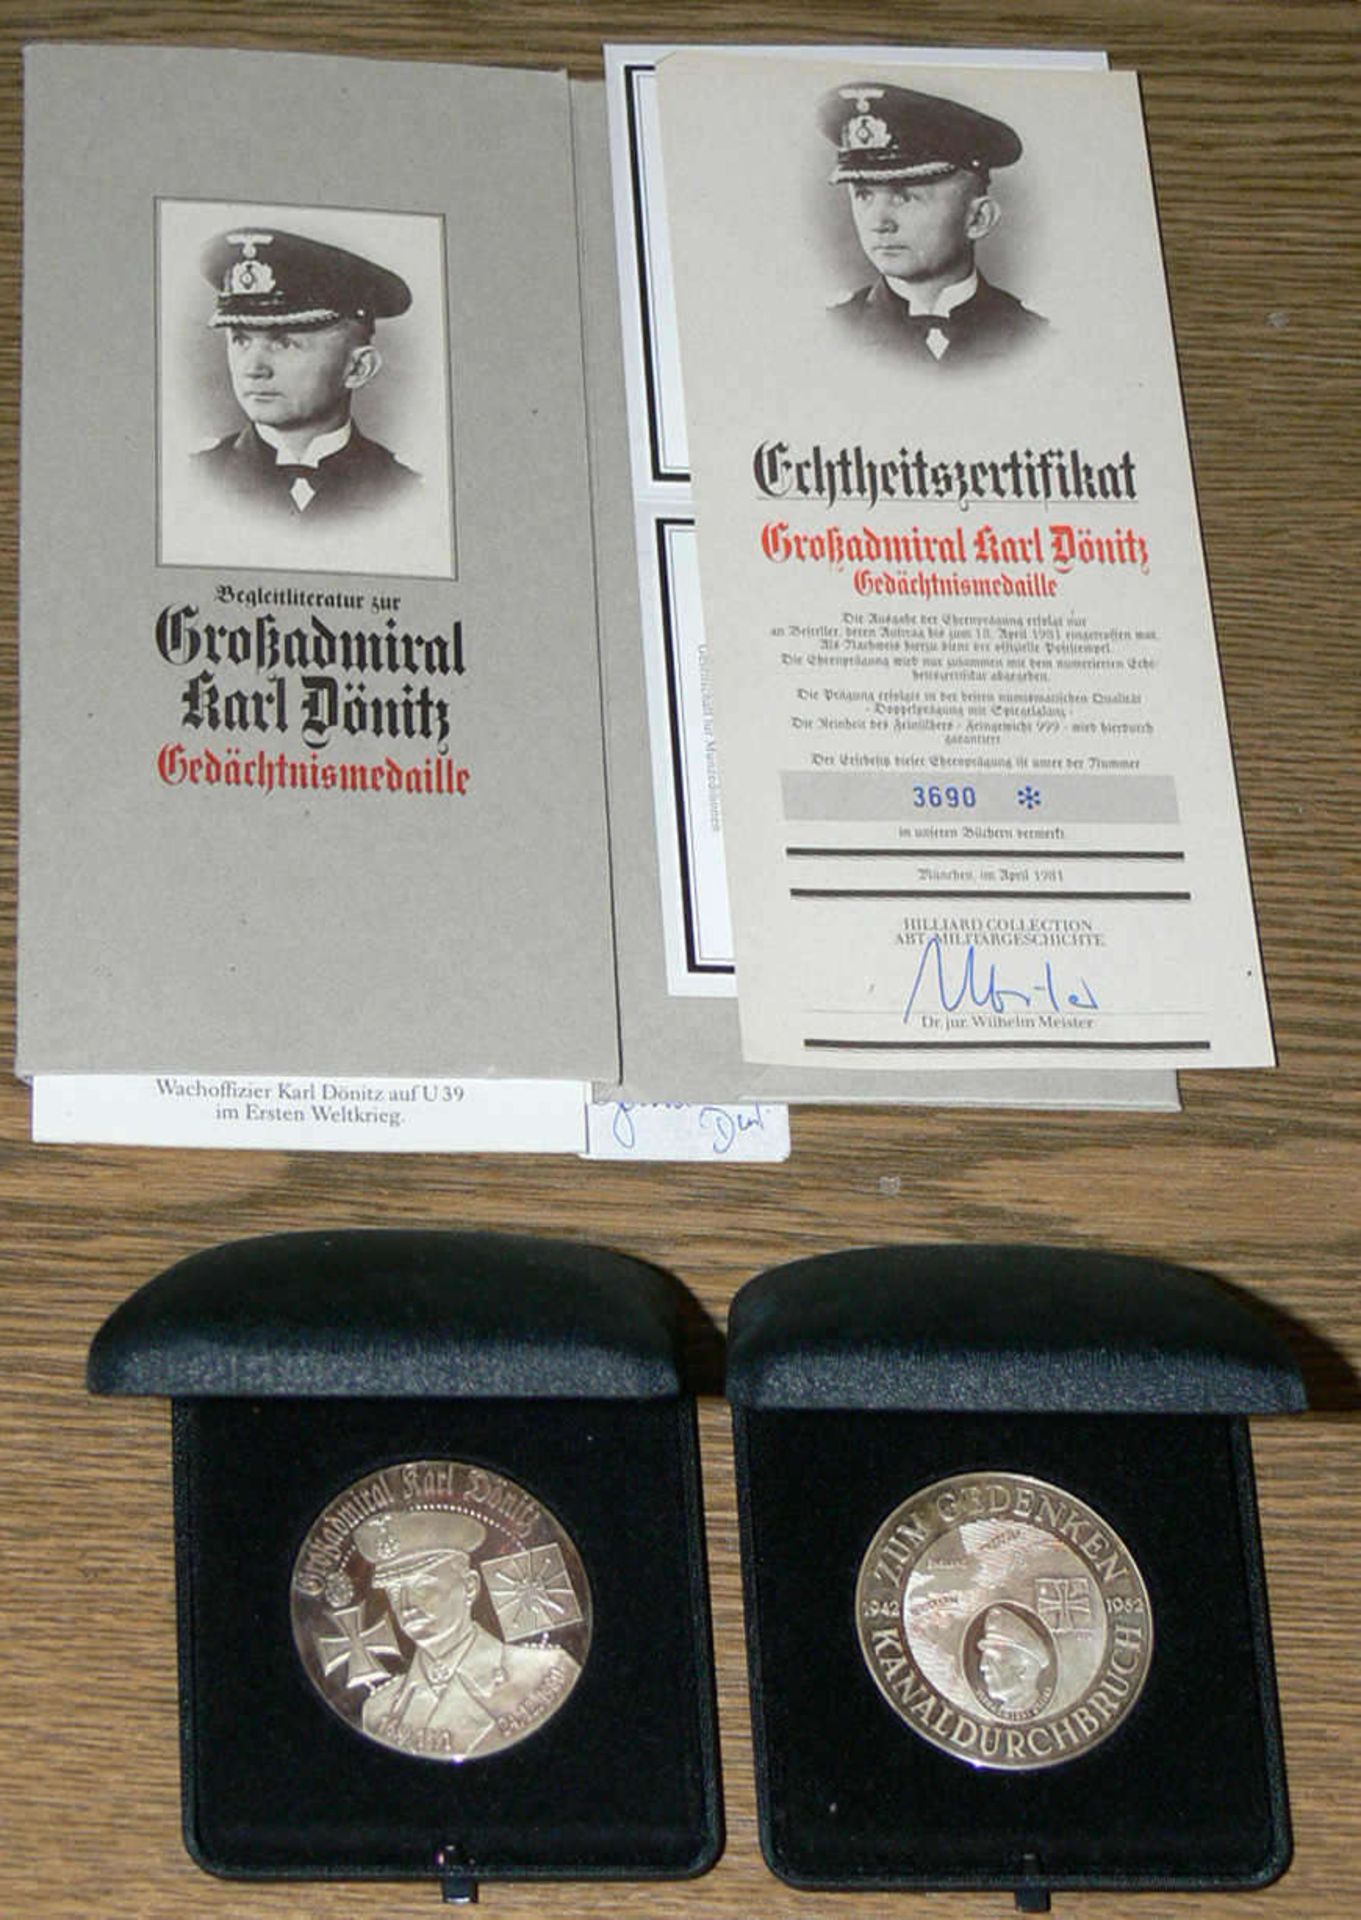 Zwei Silber - Medaillen "Großadmiral Karl Dönitz", Gedächtnis - Medaille in OVP mit Zertifikat.